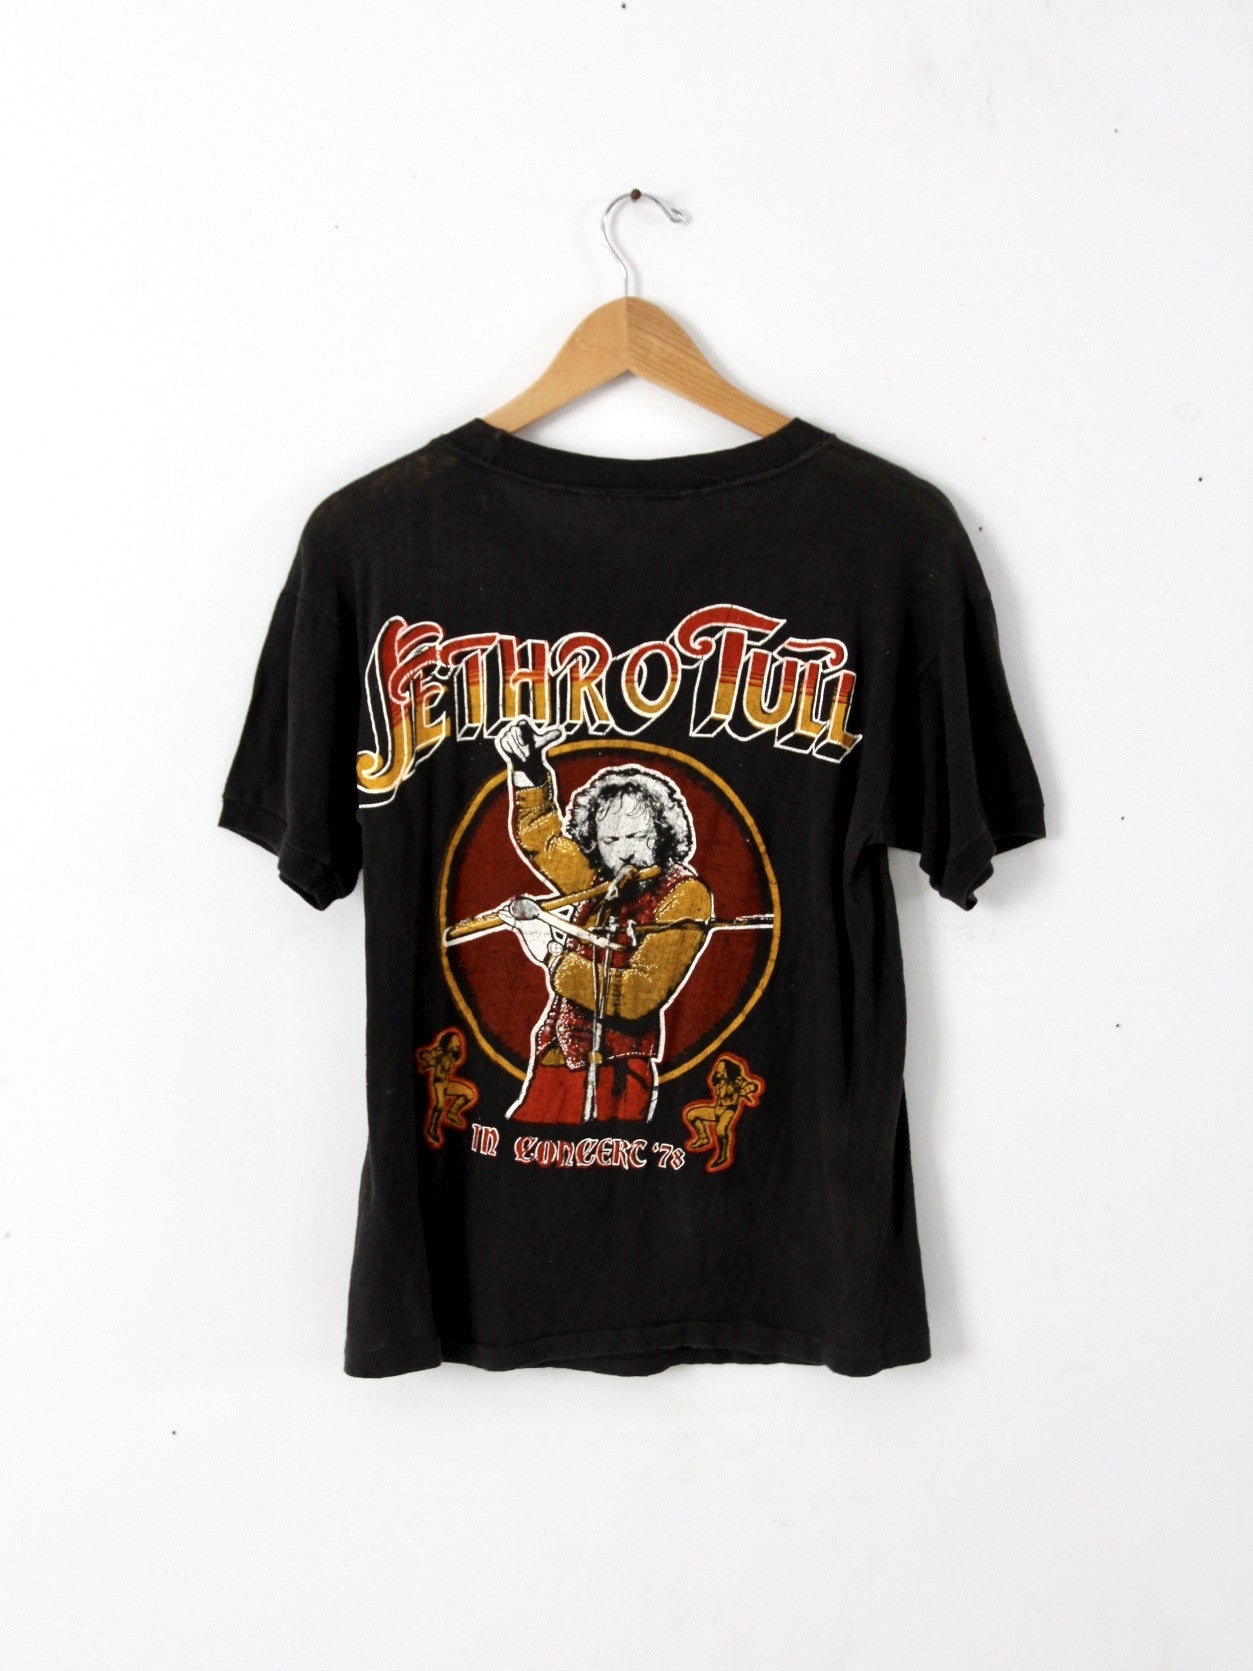 vintage 1978 Jethro Tull concert t-shirt – 86 Vintage